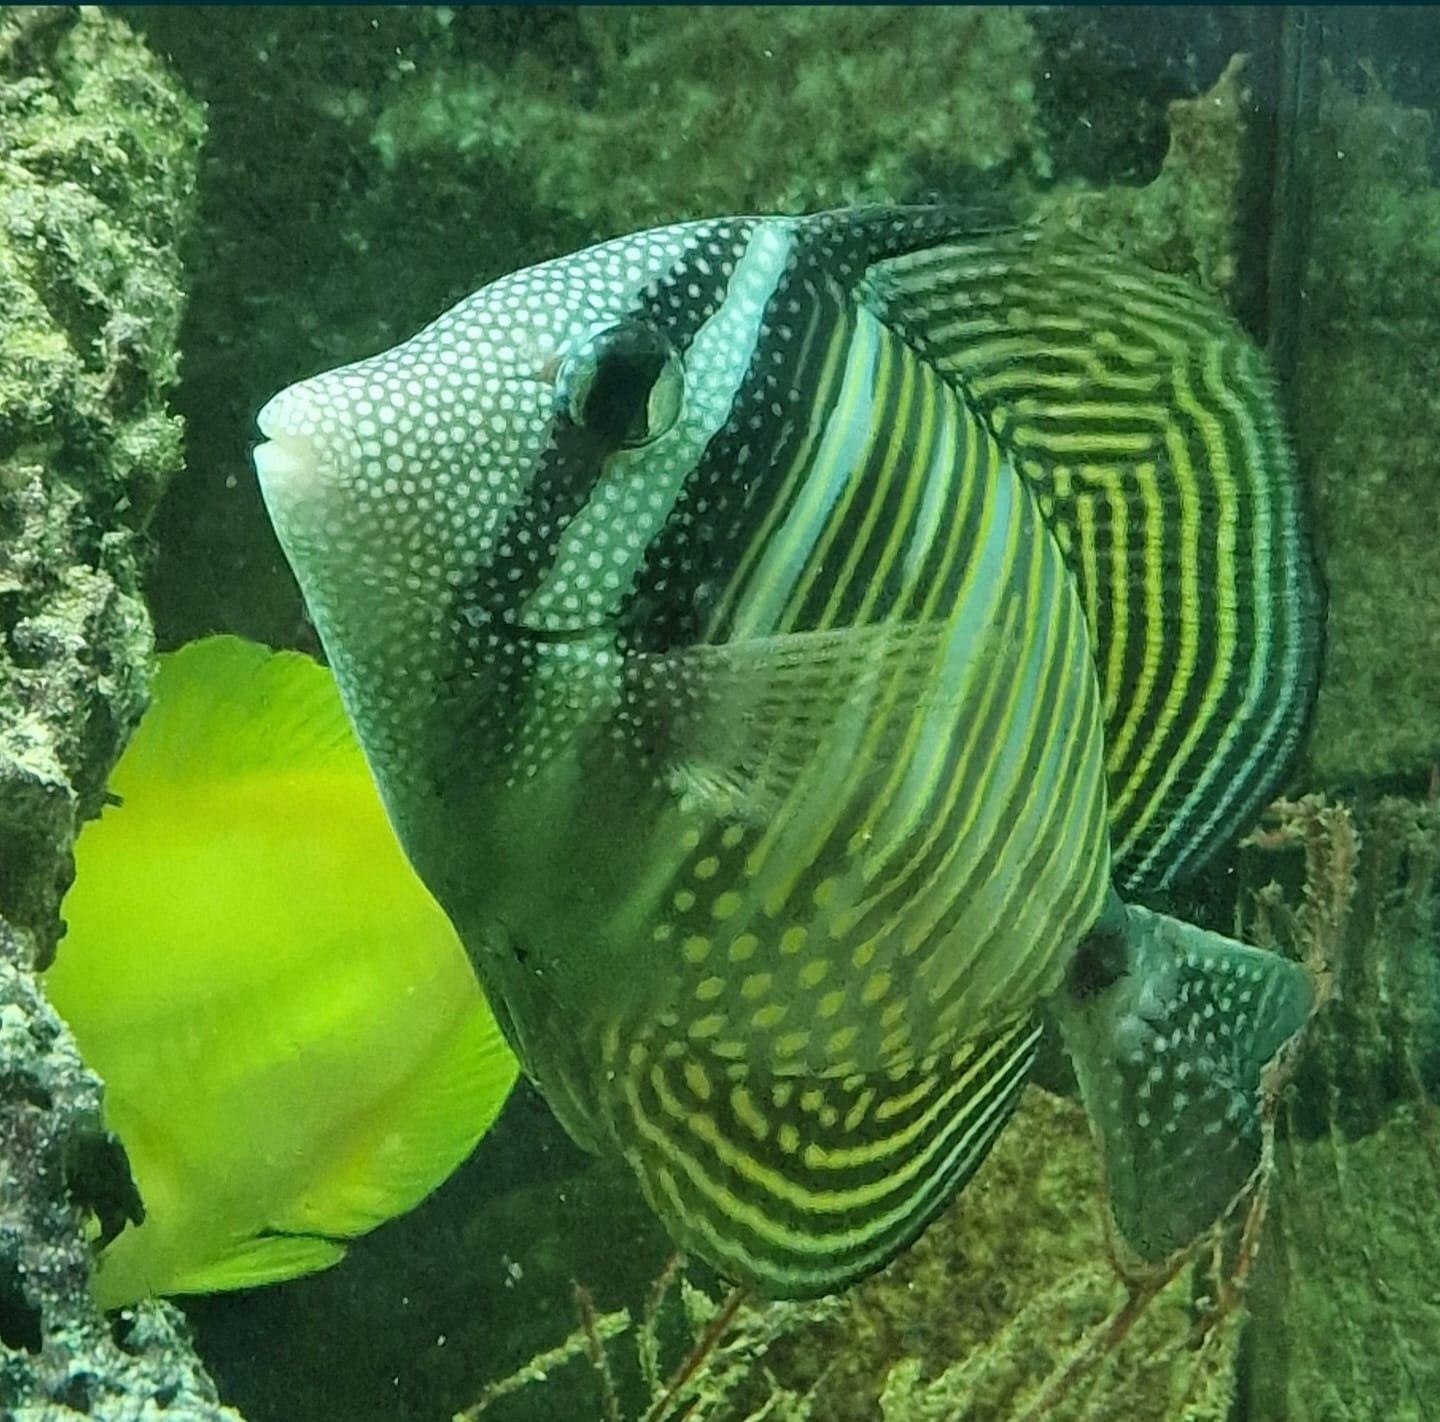 Zebrasoma desjardini - peixe de agua salgada